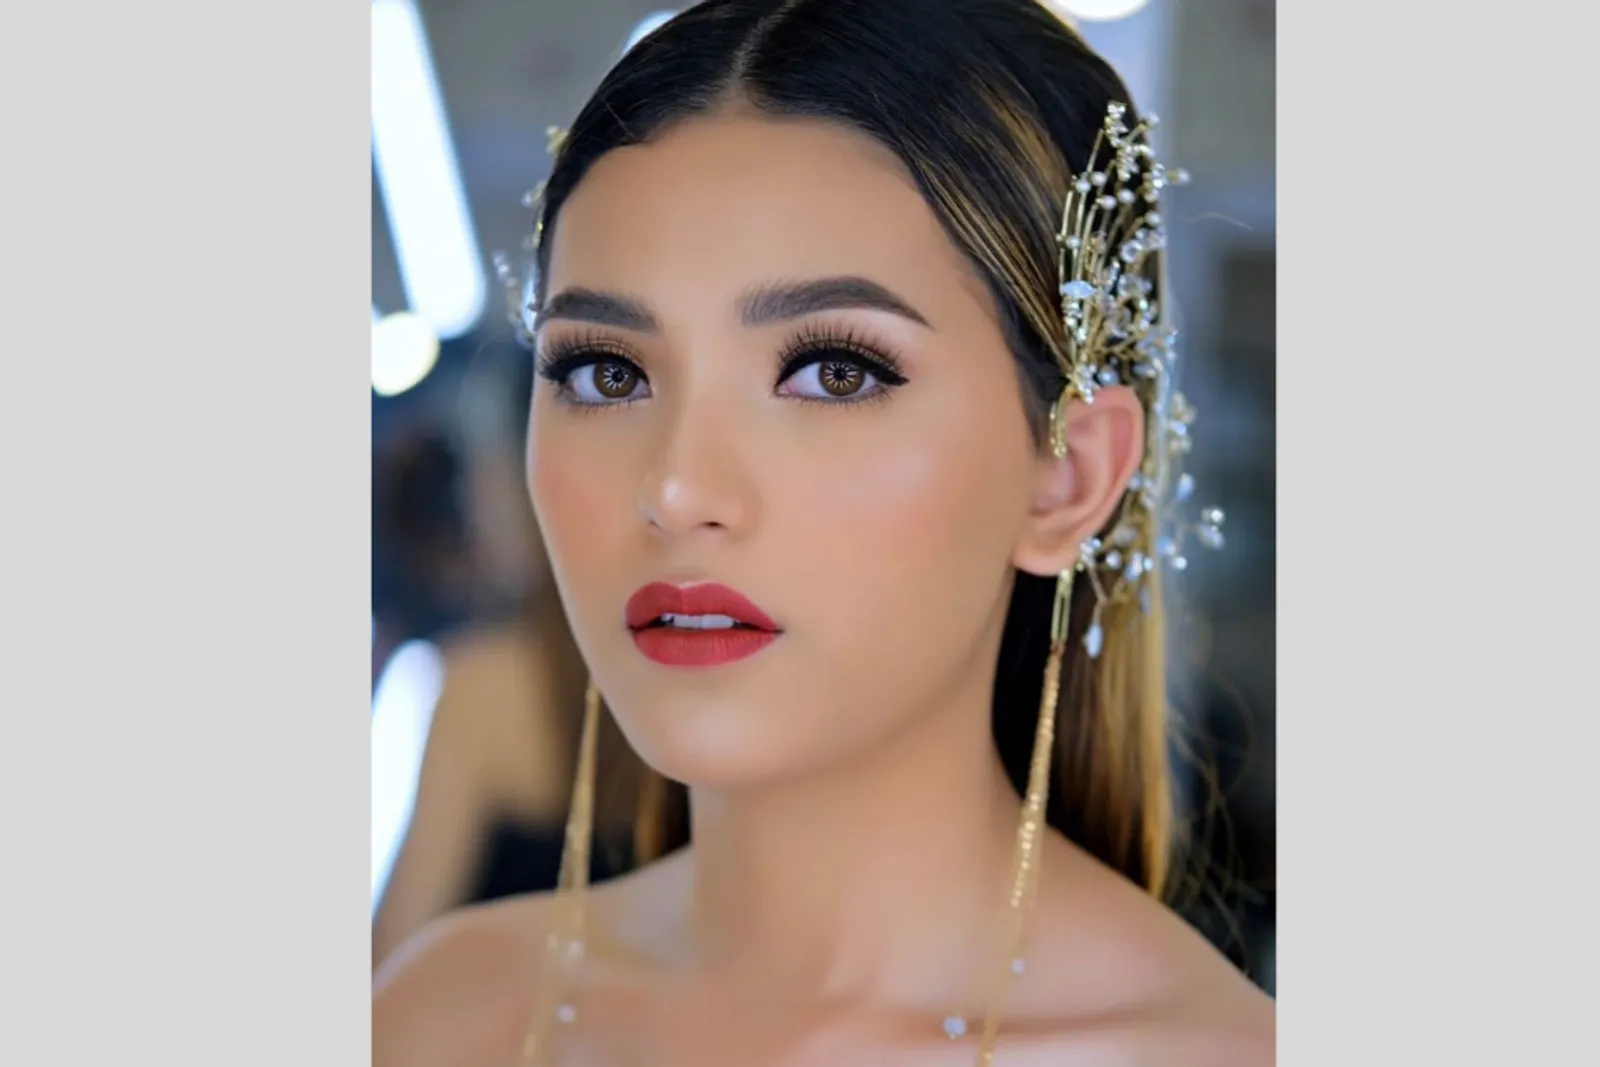 11 Fakta Unik Sarlin Jones, Pemenang Miss Grand Indonesia 2019